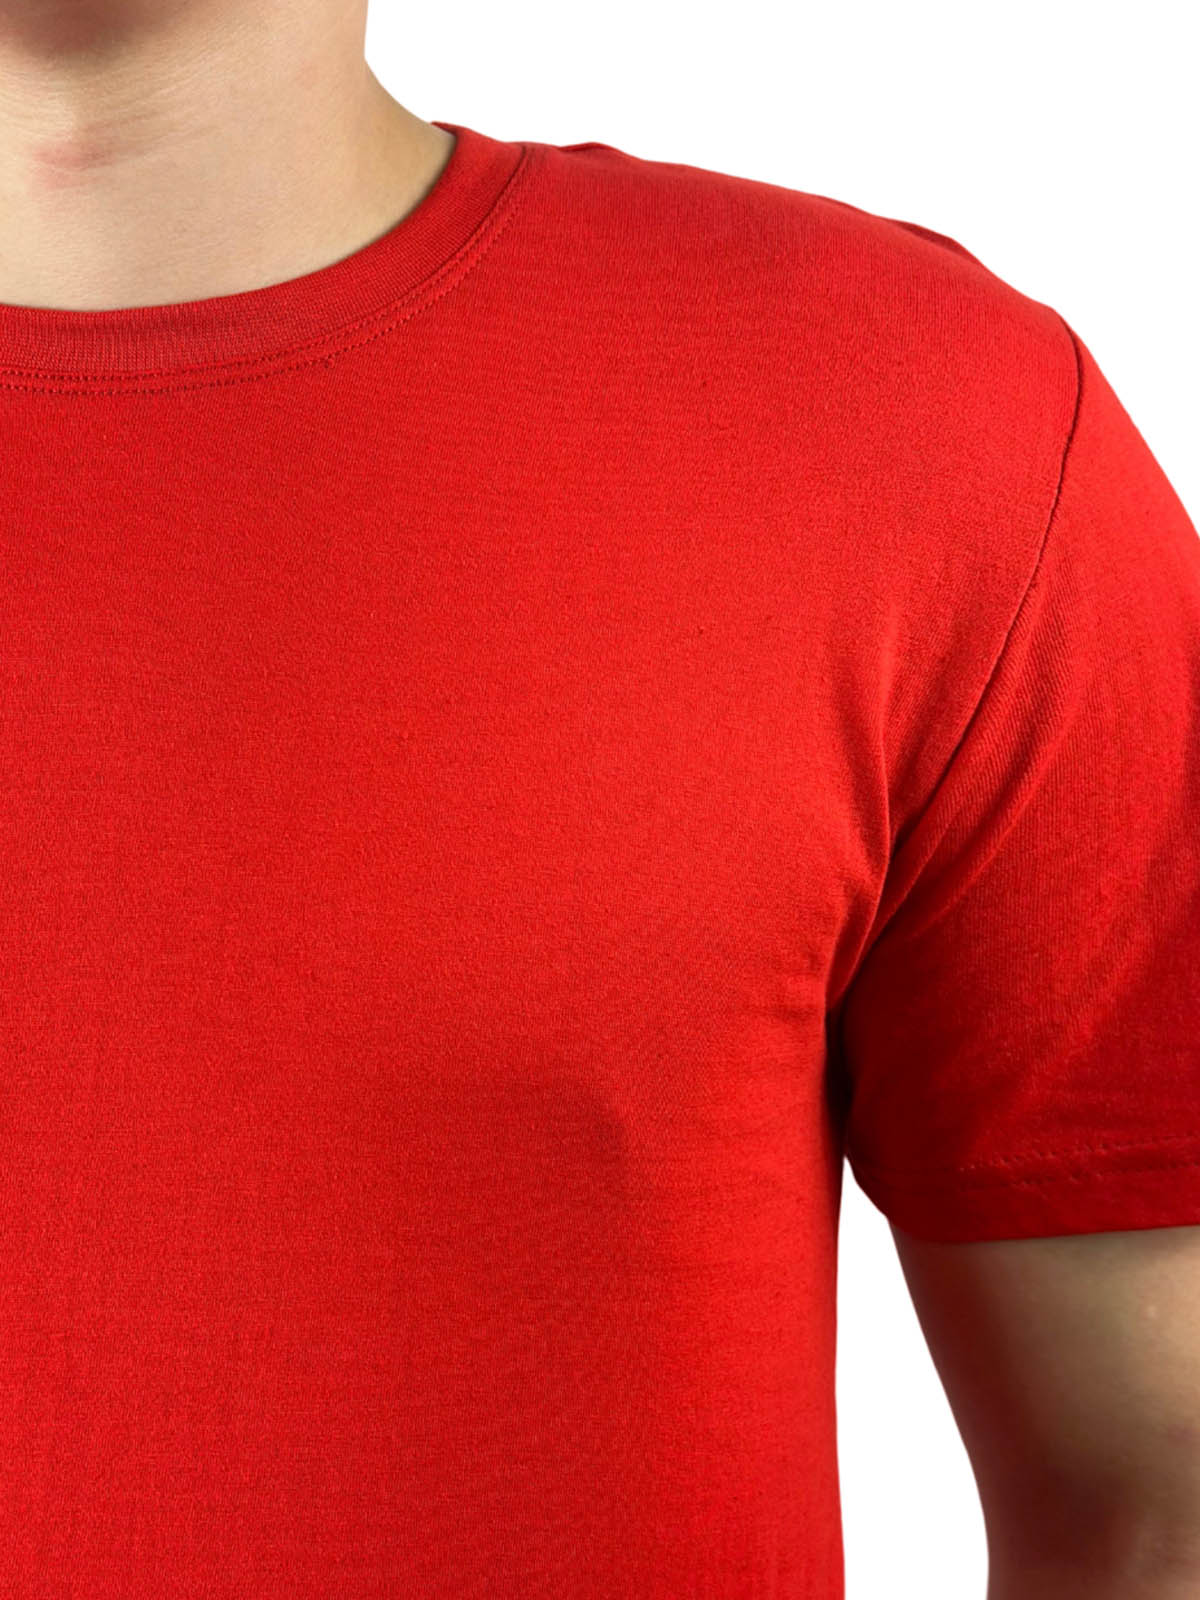 Заказать красные футболки оптом